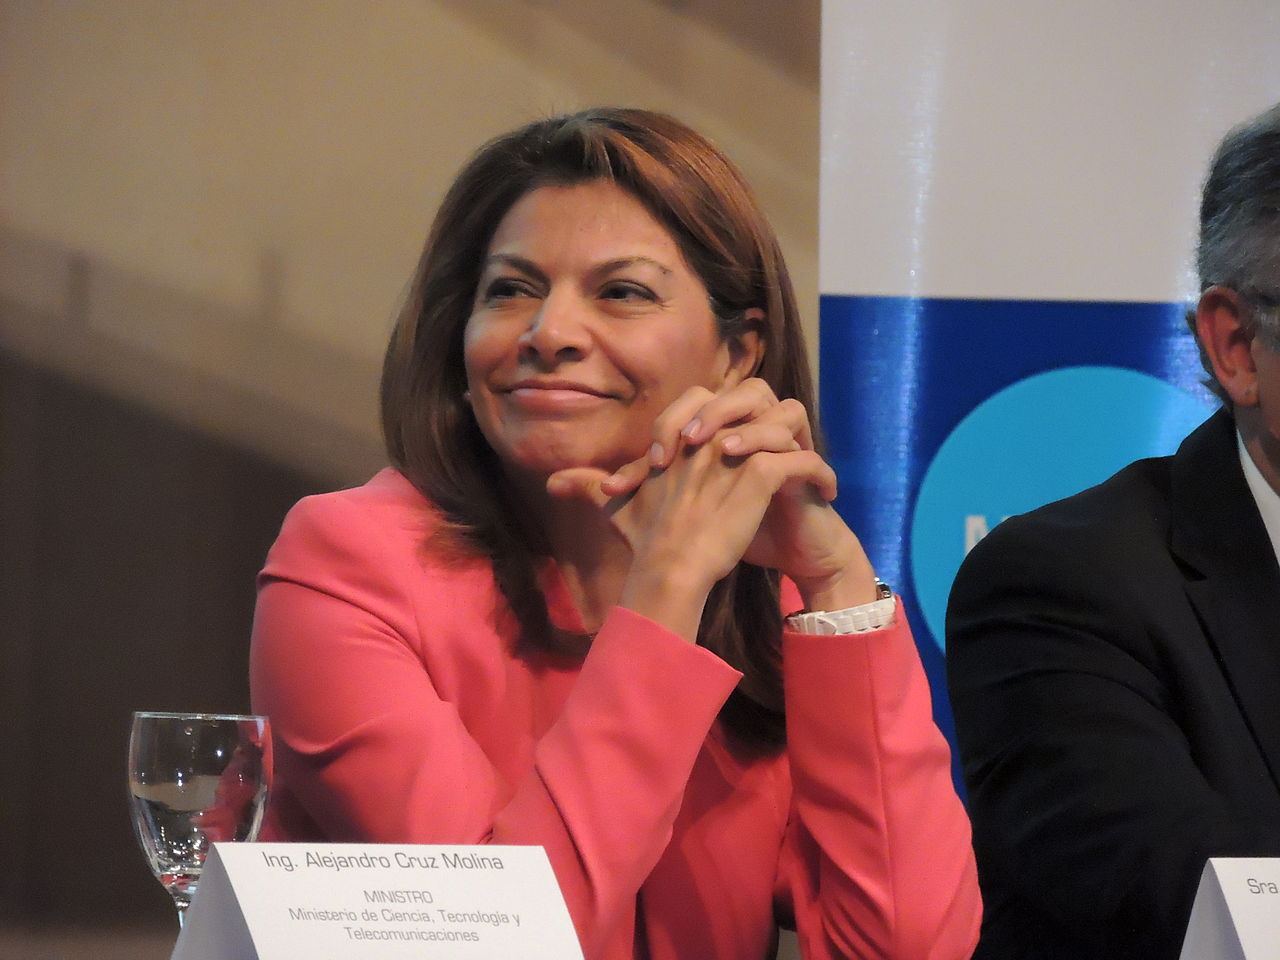 Ex-presidente da Costa Rica, Laura Chinchilla, faz parte da missão da OEA que acompanhou as eleições brasileiras, e relata não ter detectado problemas. Foto: Wikimedia Commons